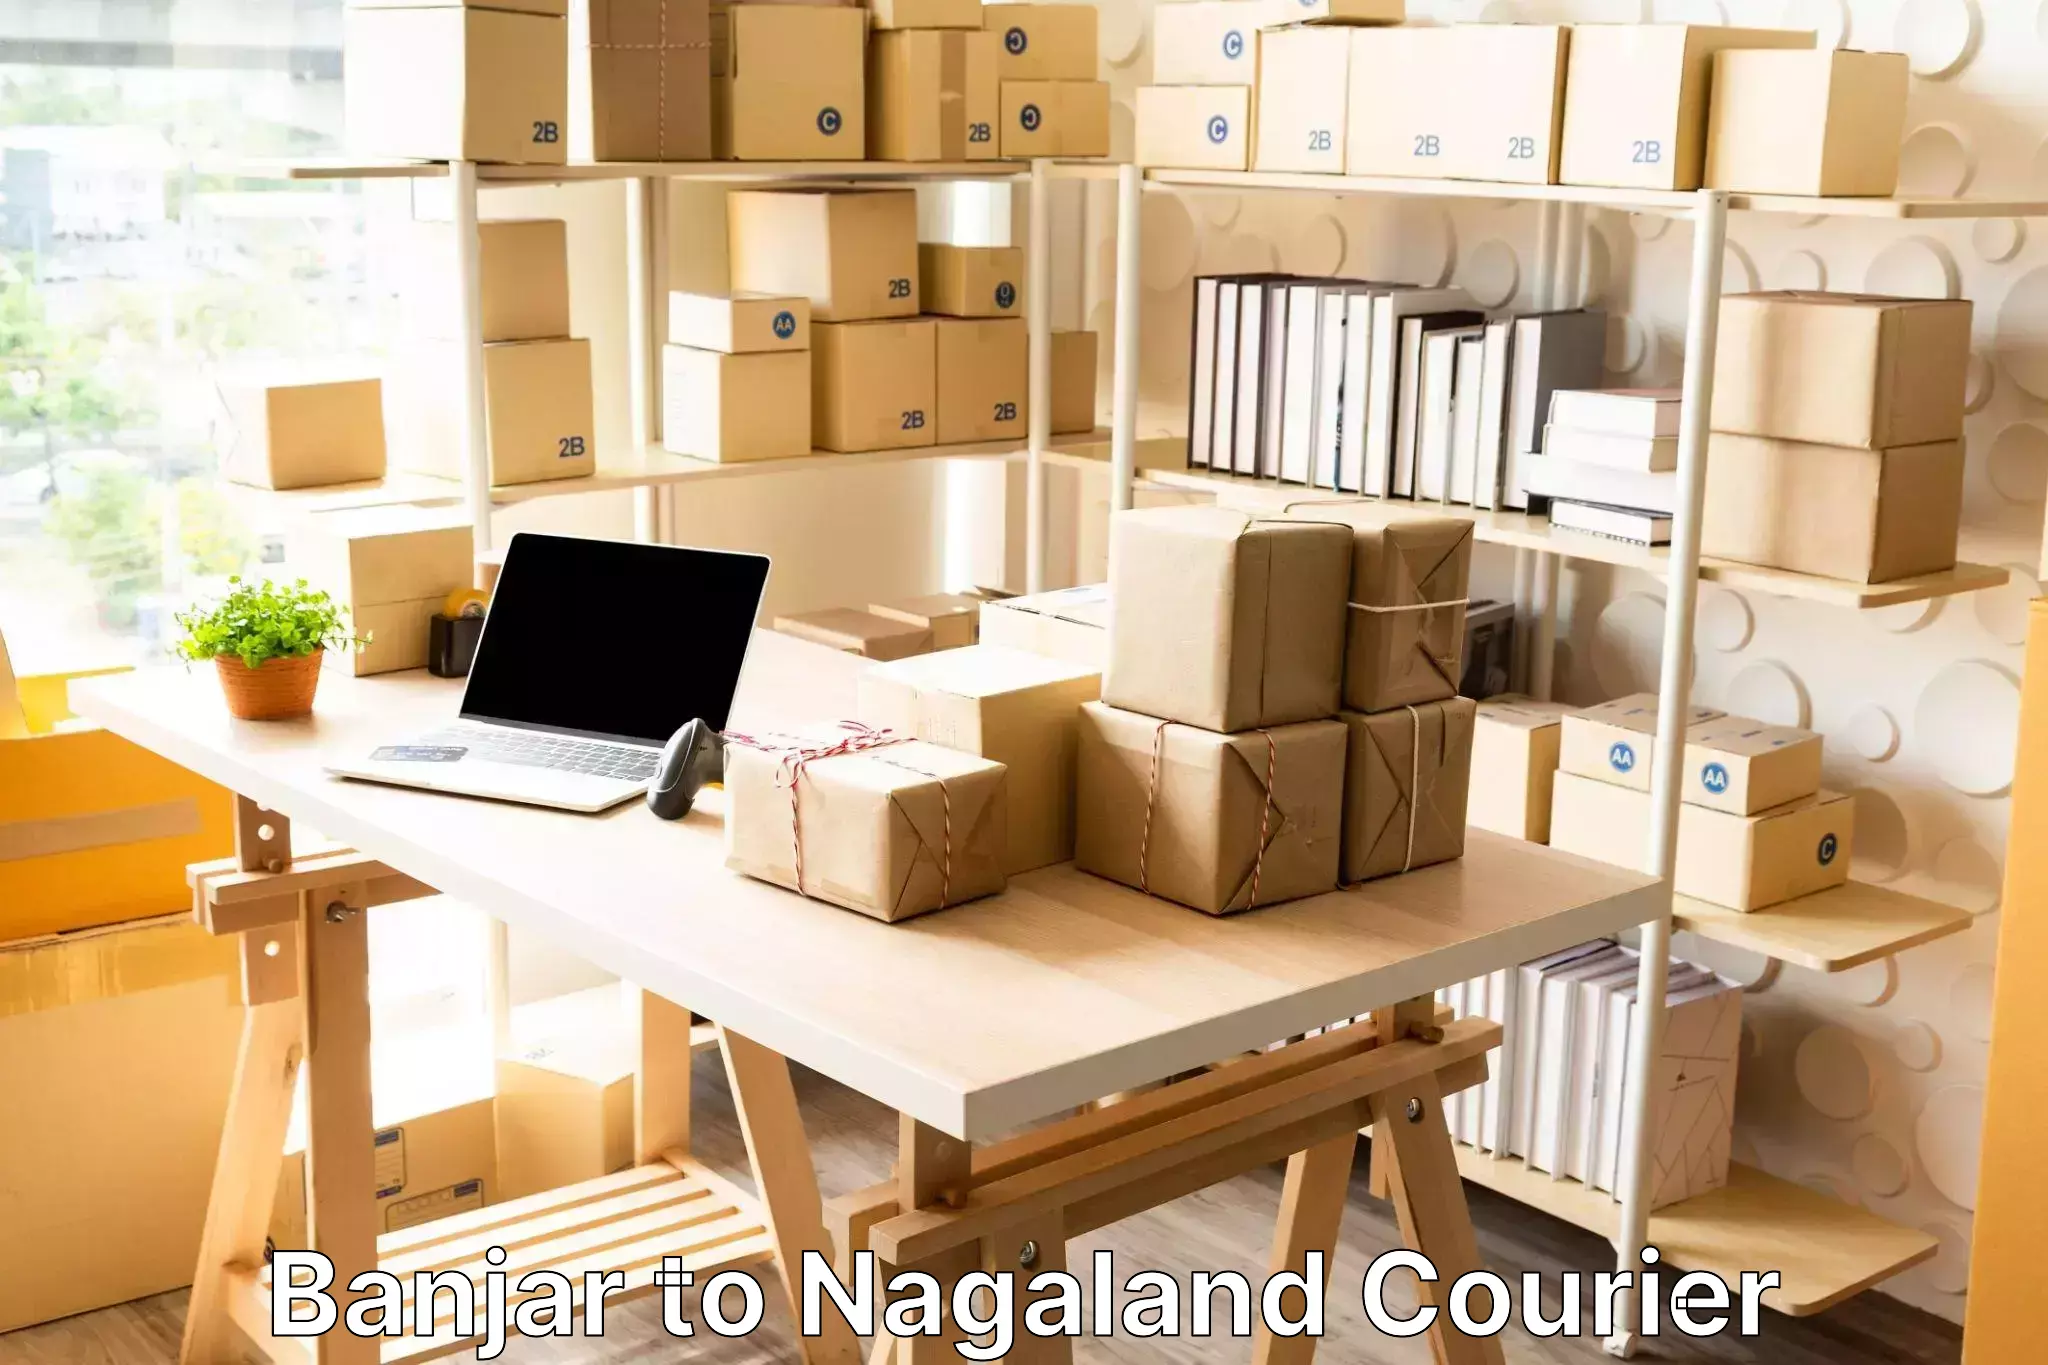 Baggage relocation service Banjar to Nagaland